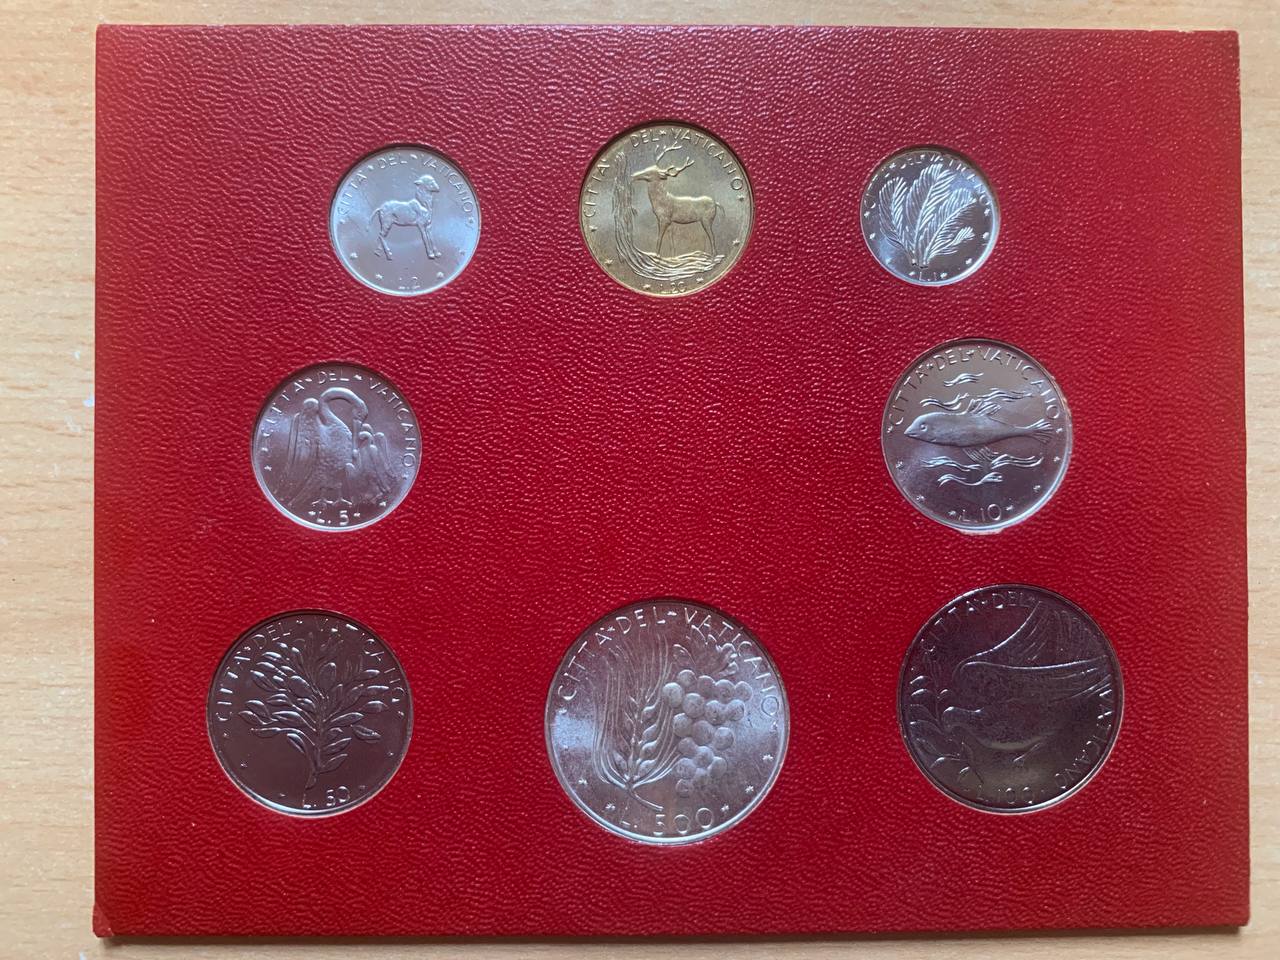  Jahresset von Vatikan 1975 BU (8 Münzen)   